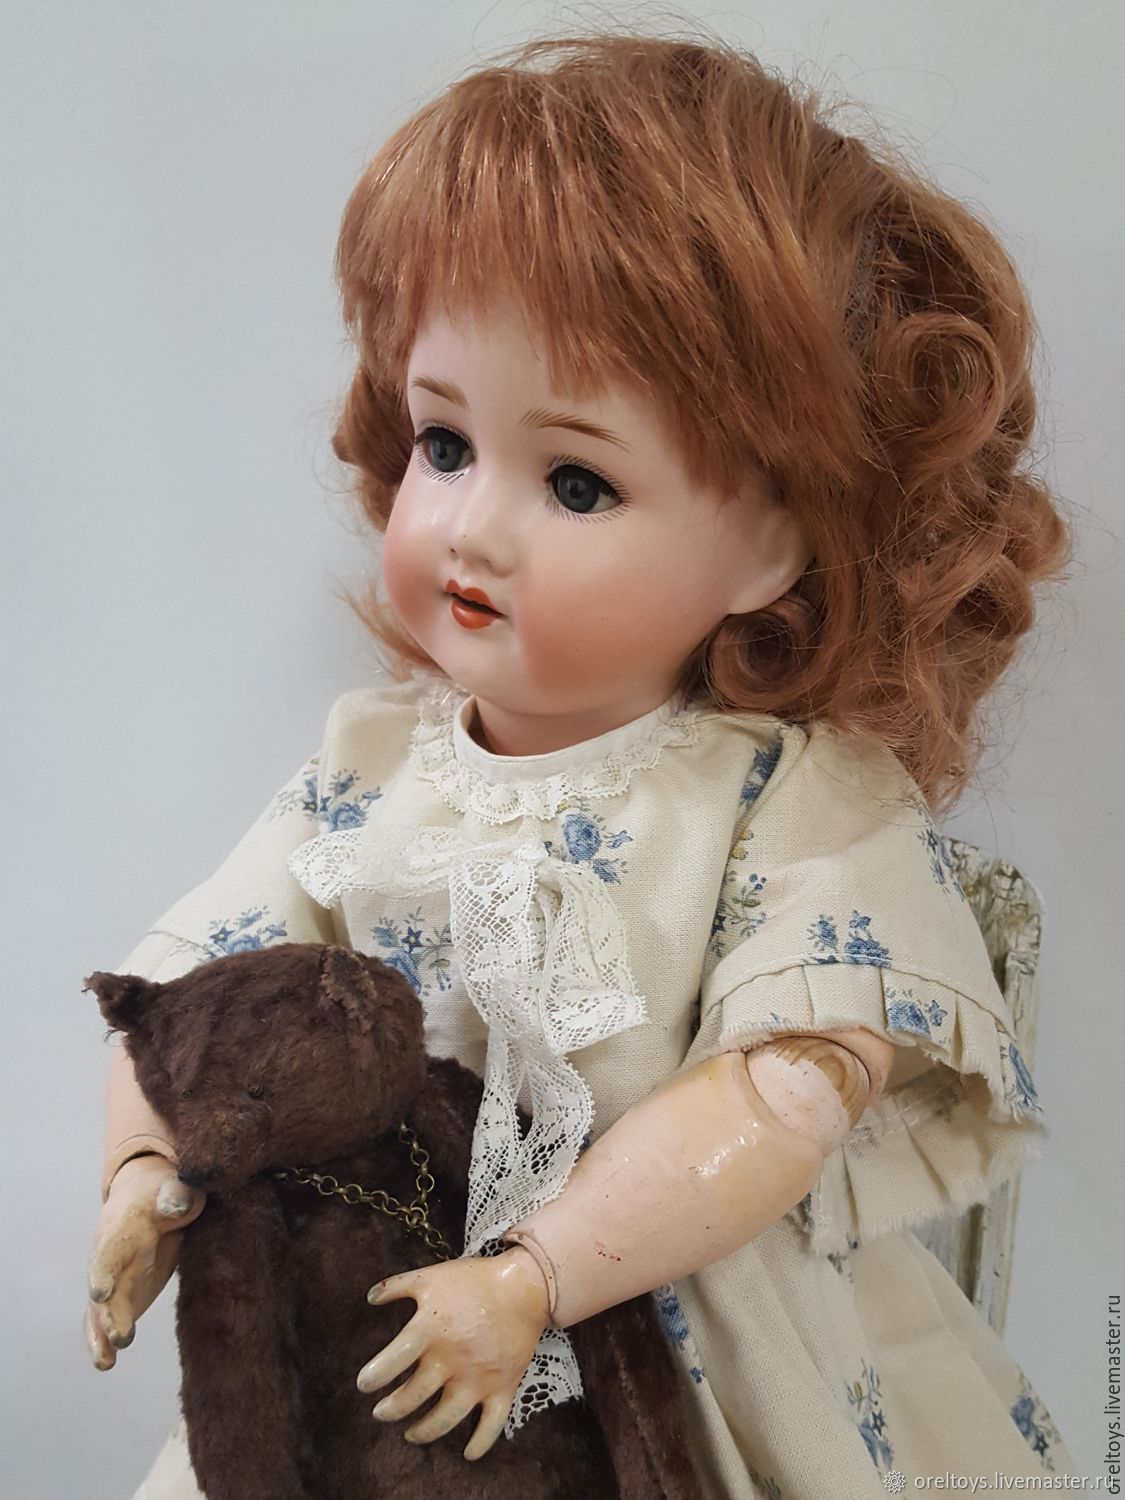 Персональная выставка и мастер-классы от кукольницы из Карелии прошли в Германии